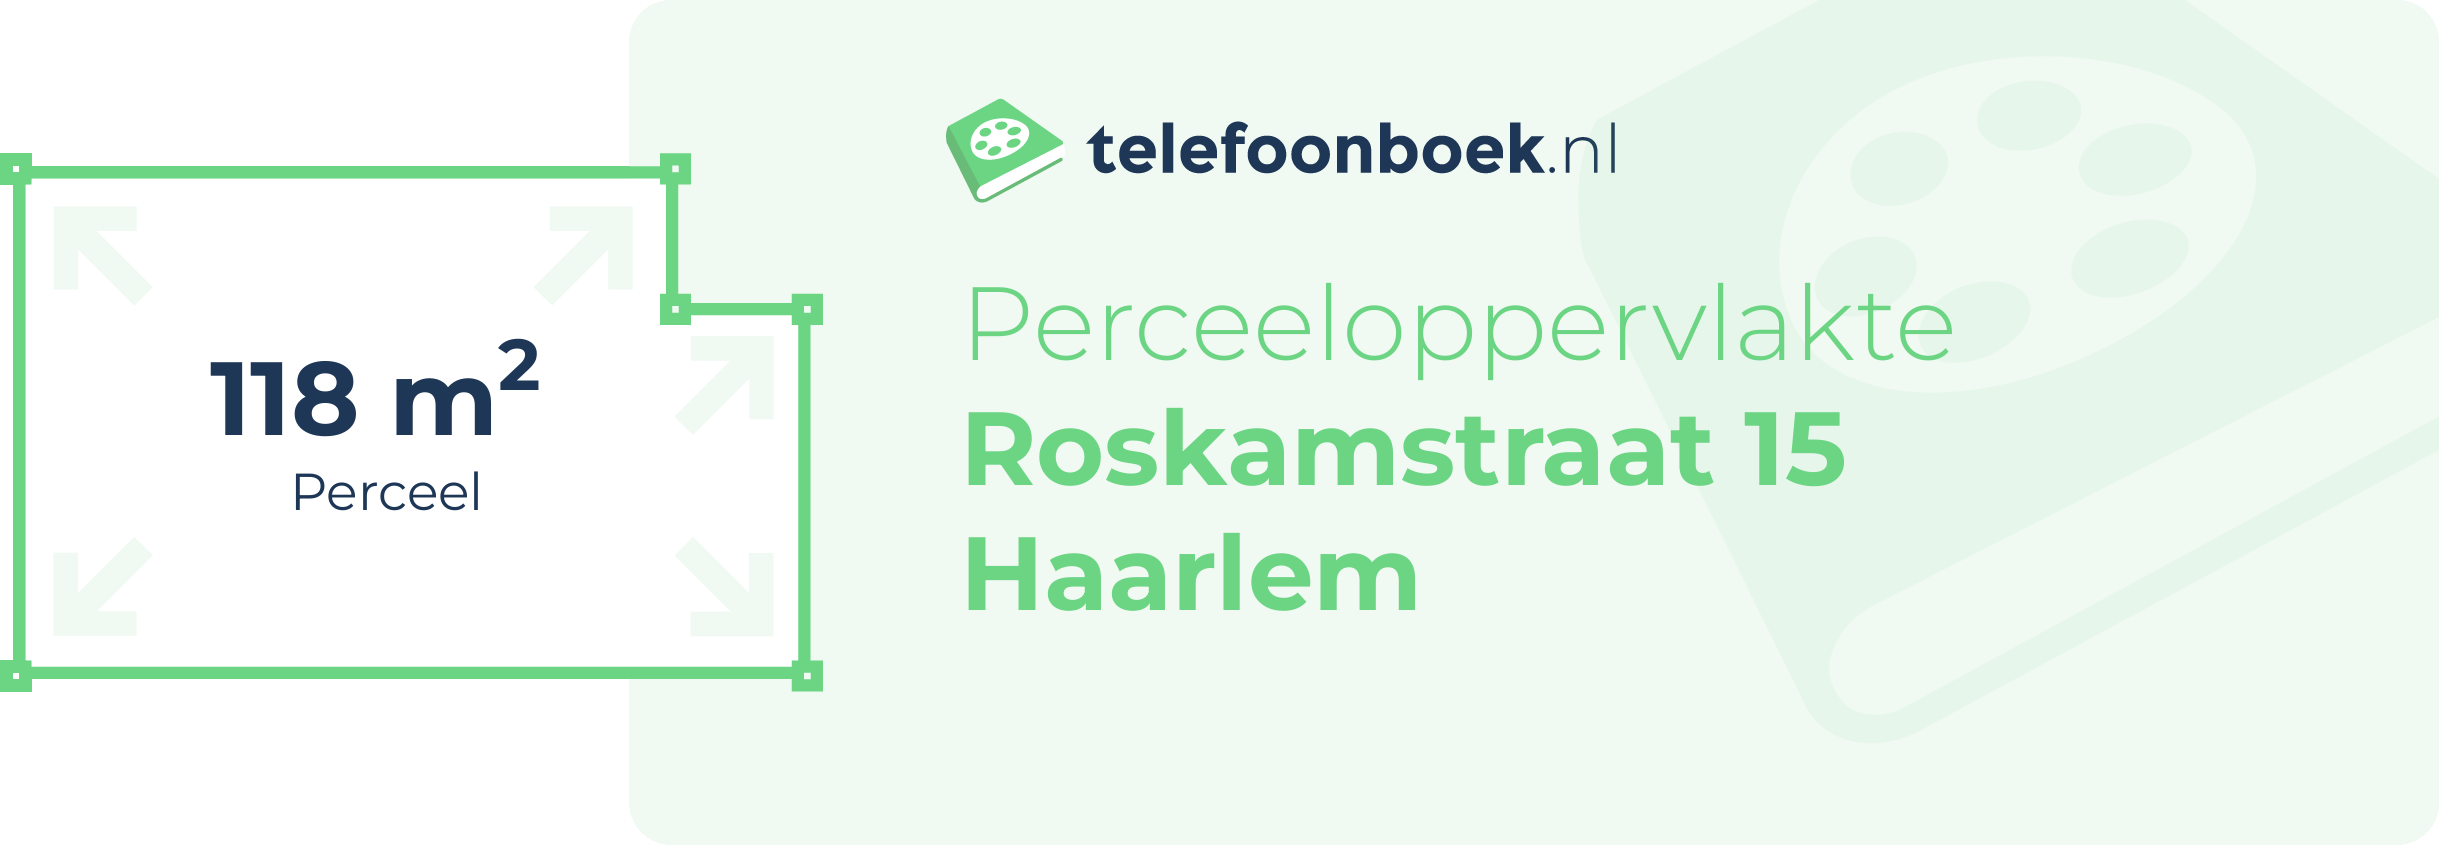 Perceeloppervlakte Roskamstraat 15 Haarlem